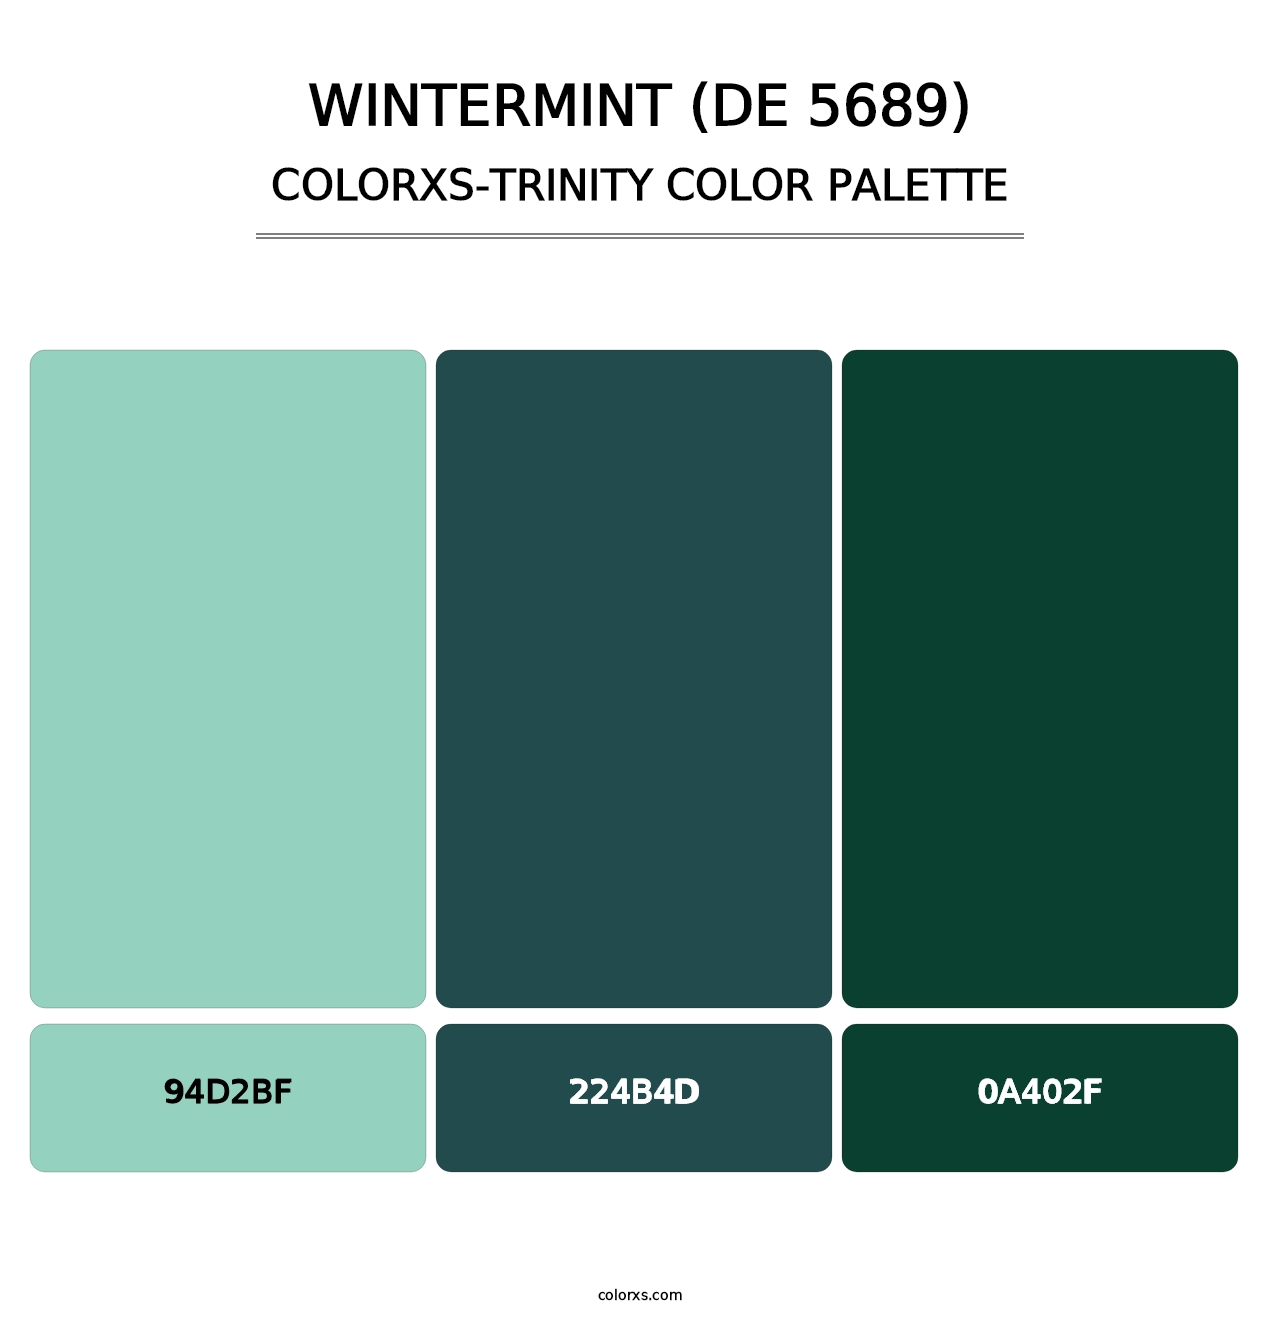 Wintermint (DE 5689) - Colorxs Trinity Palette